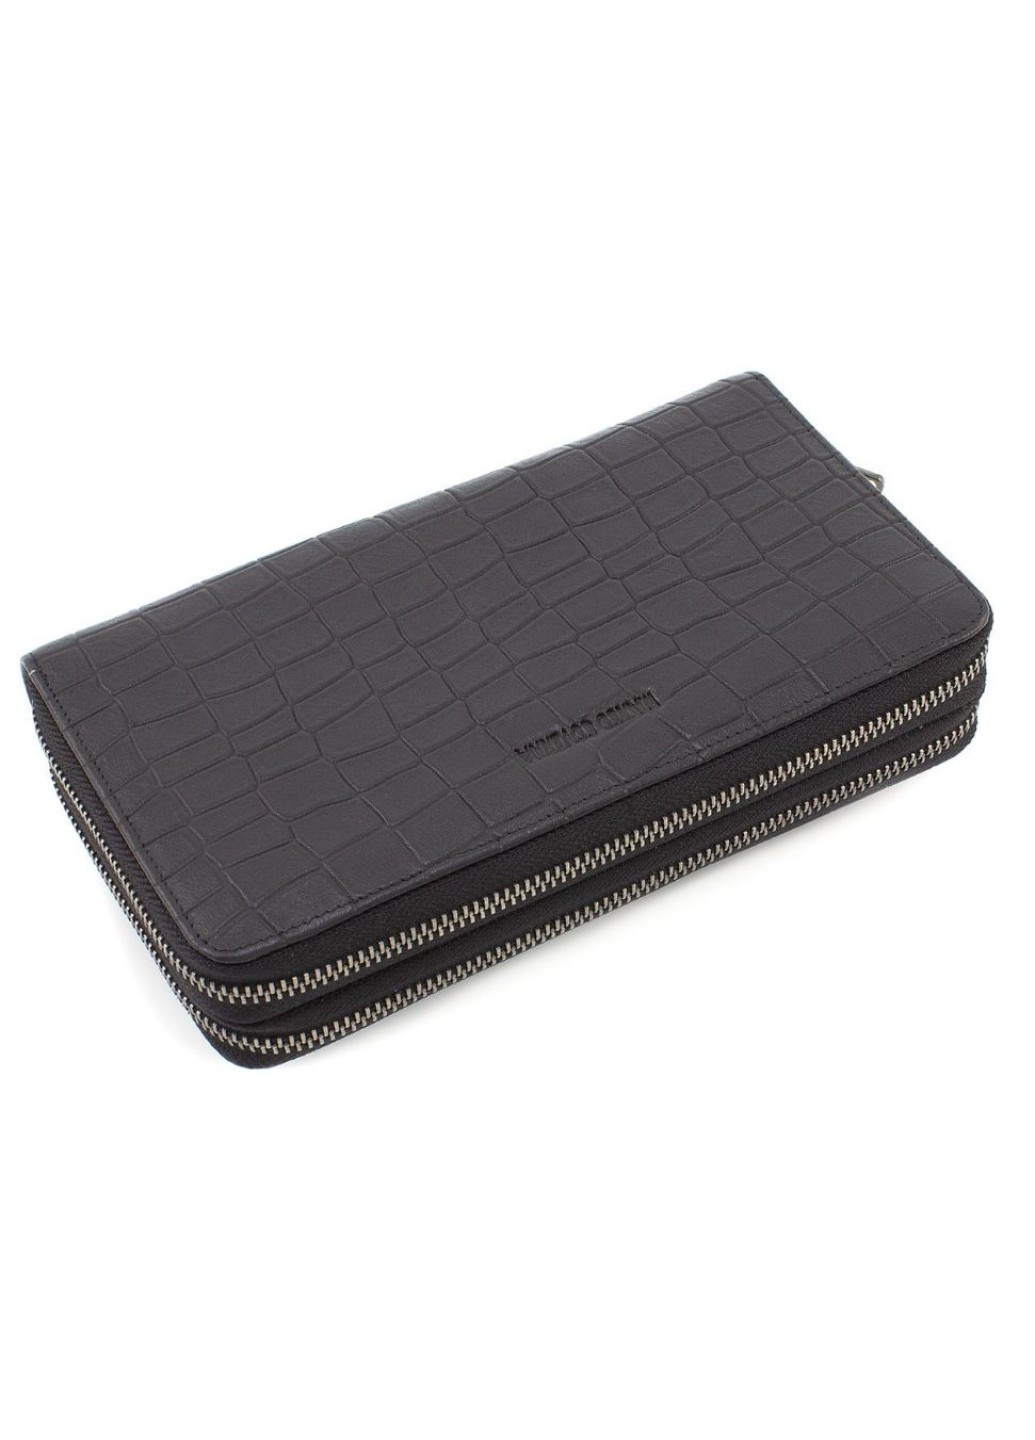 Мужской кошелек-клатч из высококачественной кожи на две змейки 21х12 020-5902C (21069) чёрный Marco Coverna (259736983)